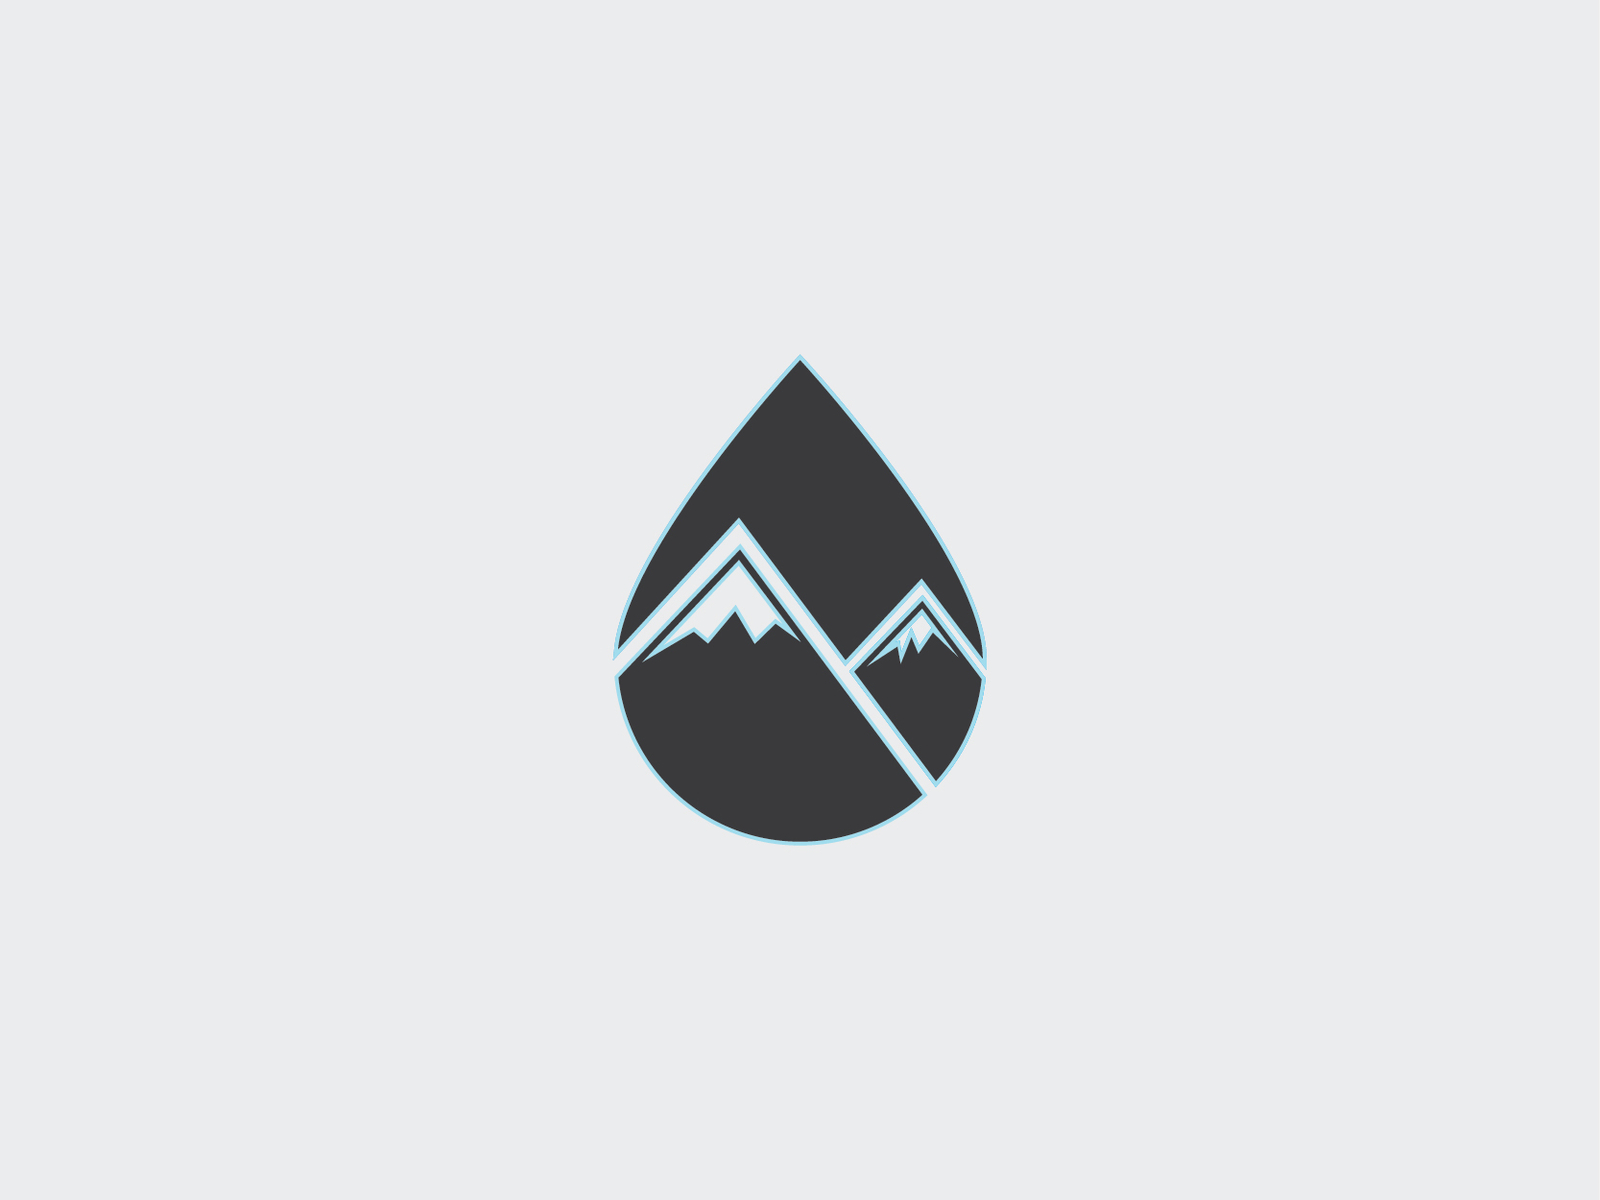 Ski Mountain Logo Design by merix yudantia on Dribbble